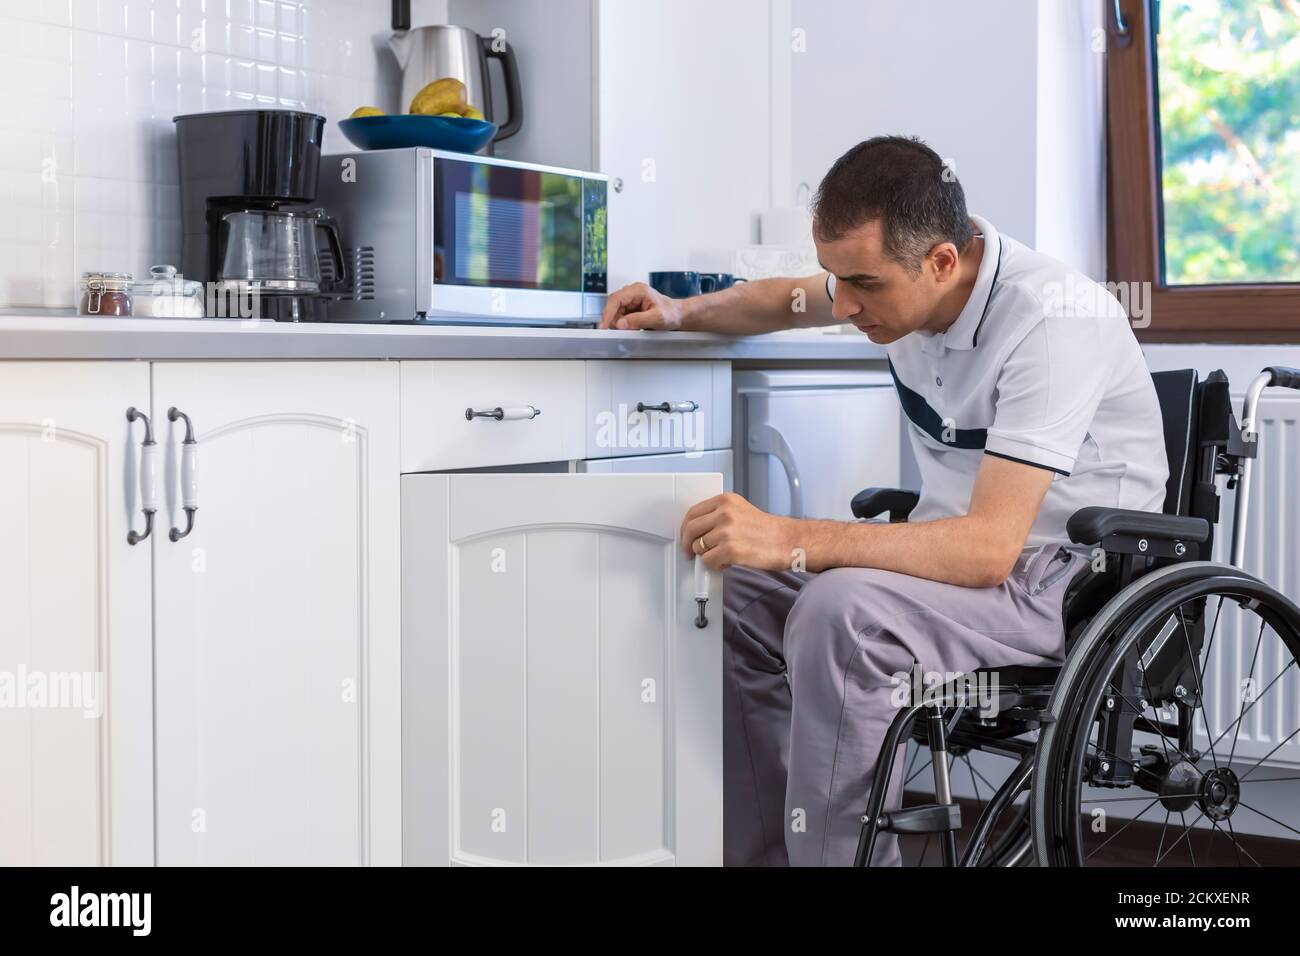 Jeune homme handicapé assis en fauteuil roulant dans la cuisine. Concentrez-vous sur son visage. Banque D'Images